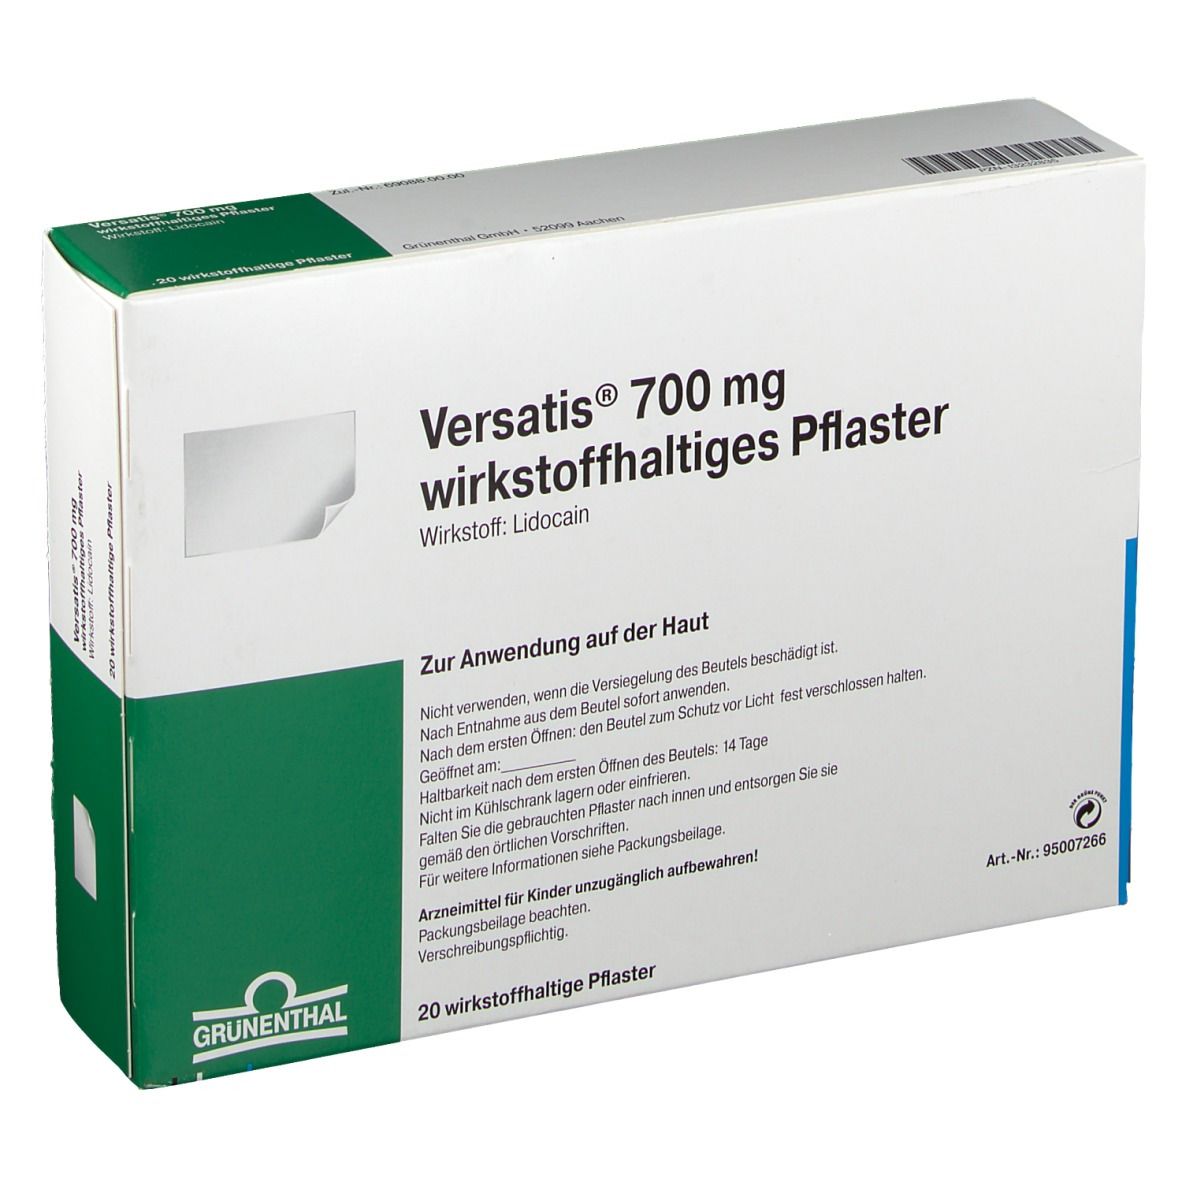 Versatis® 700 mg